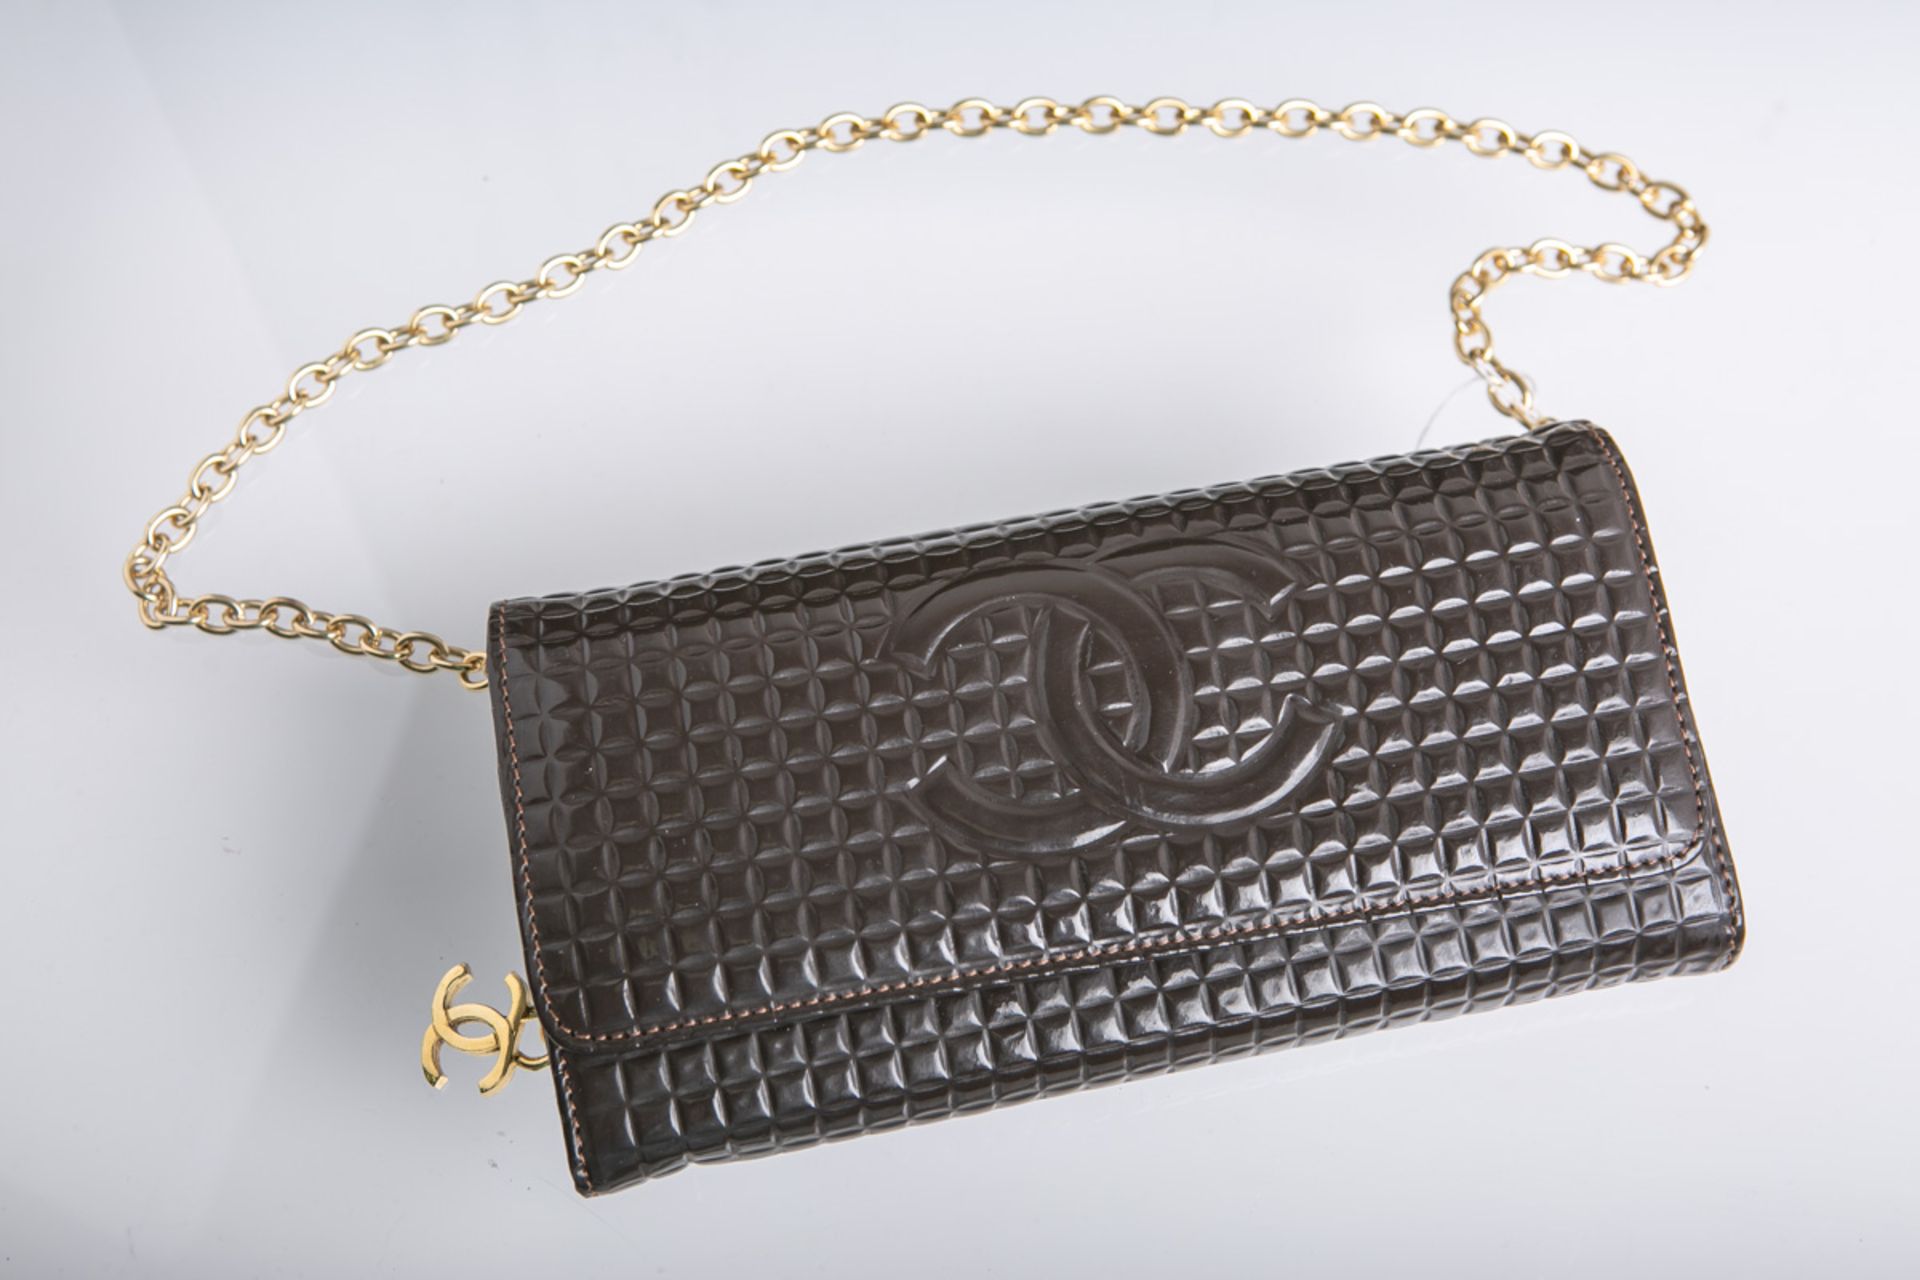 Brieftasche, wohl von Chanel